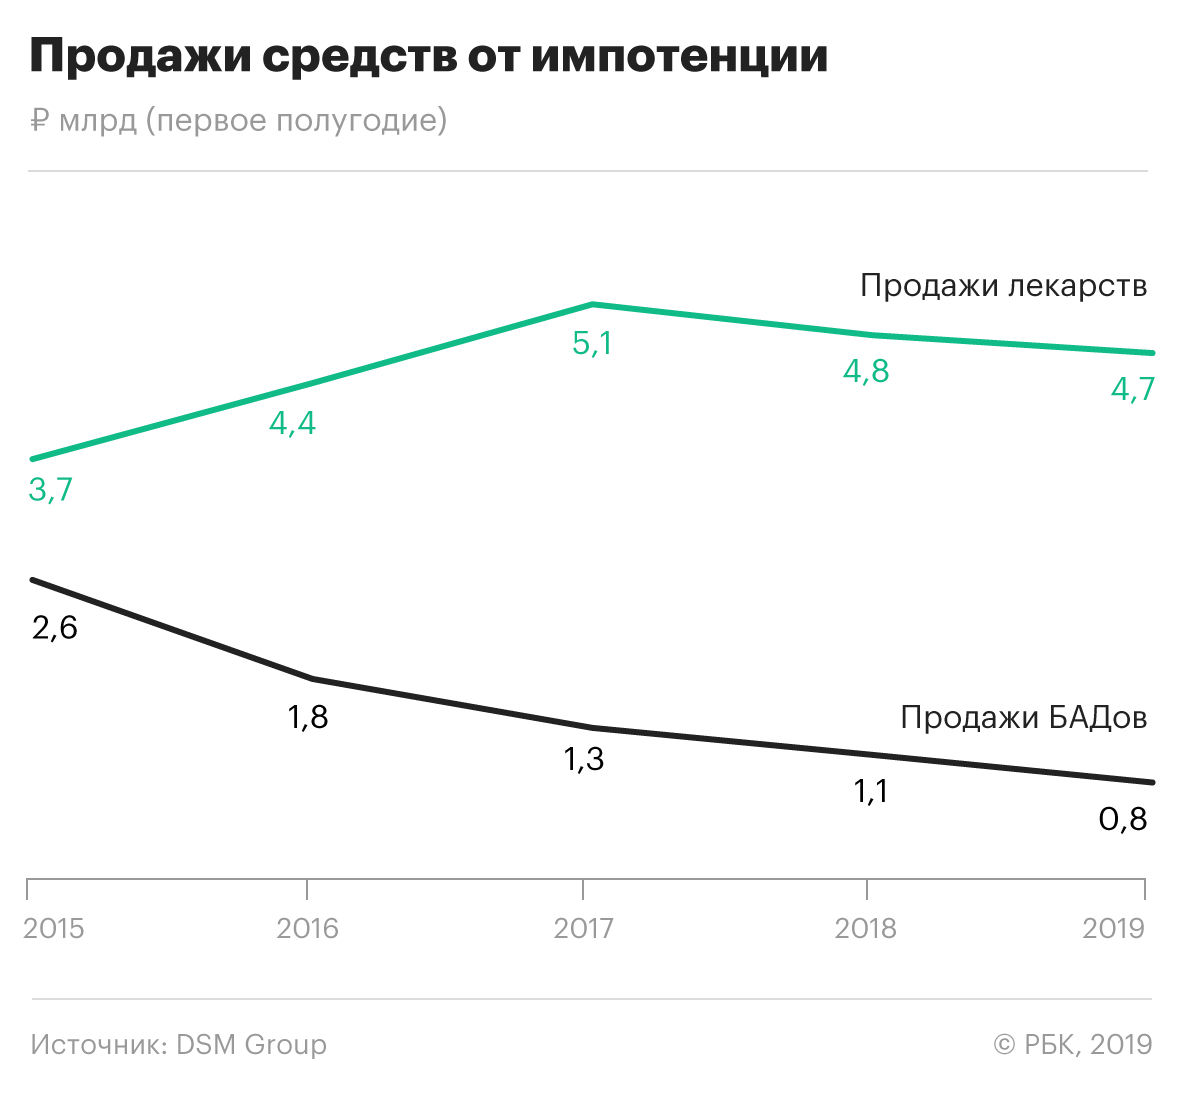 Продажи лекарств для потенции в России за пять лет выросли на 60%